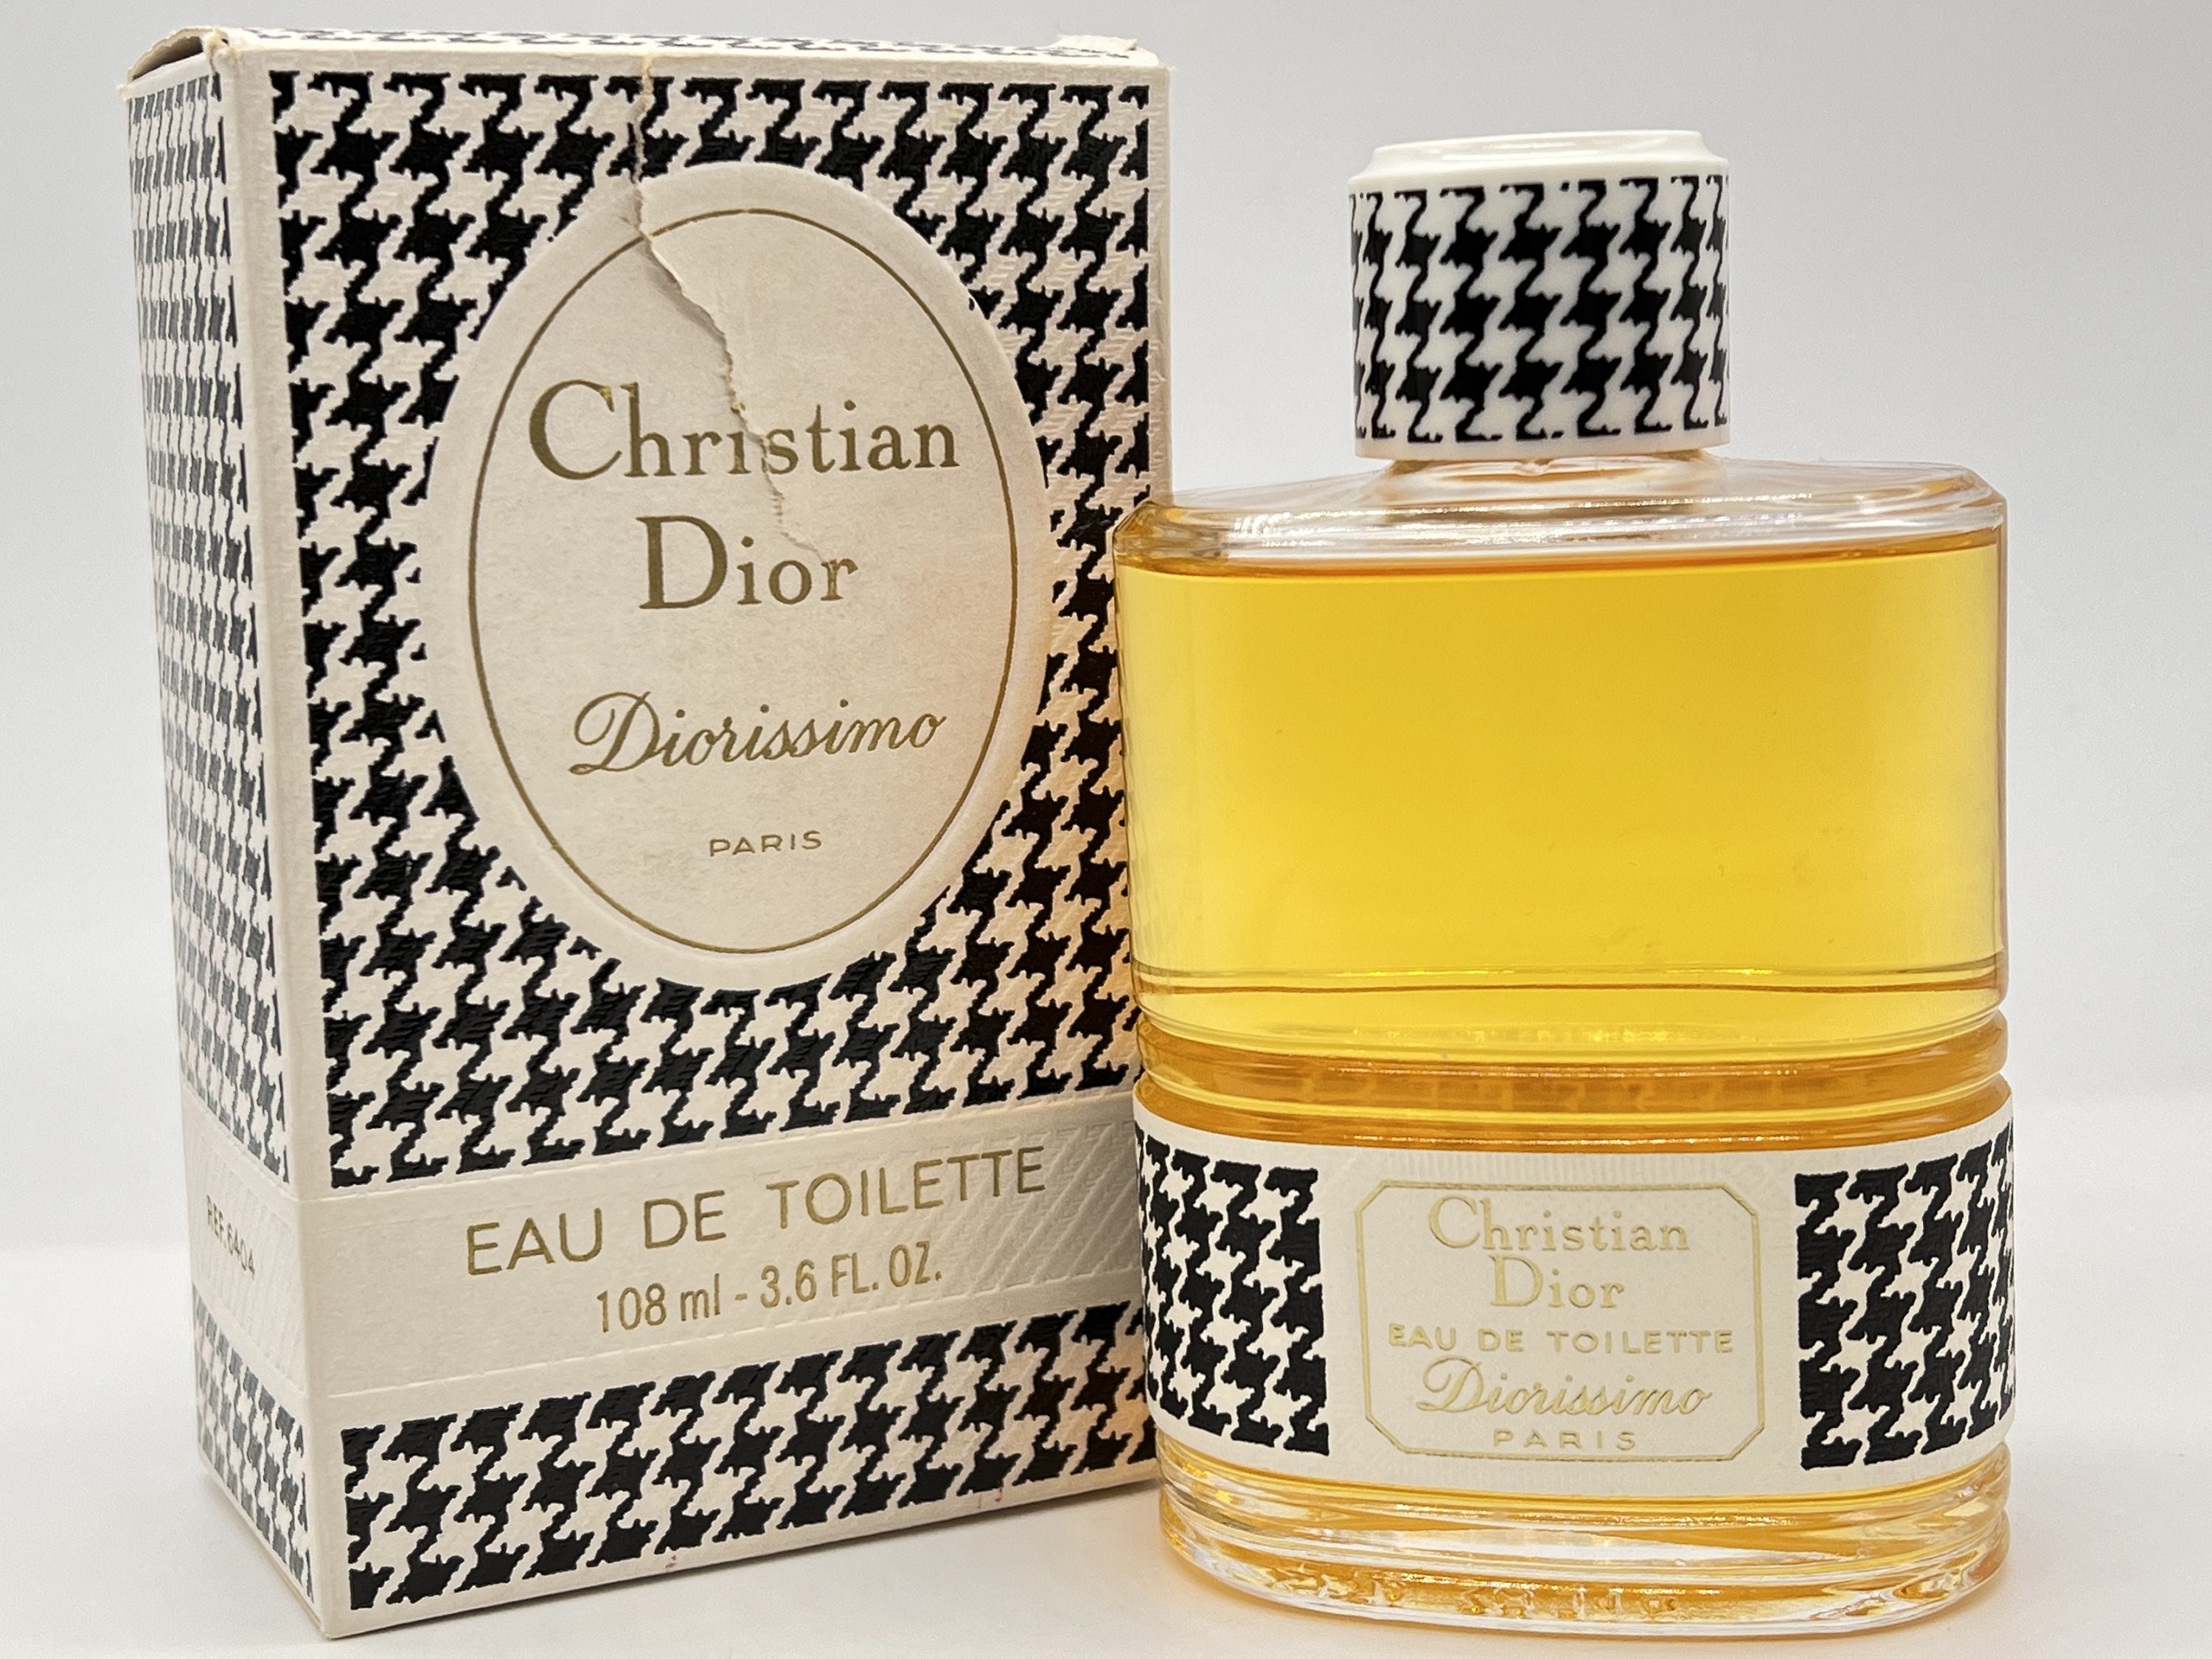 1956 Dior Diorissimo Parfum